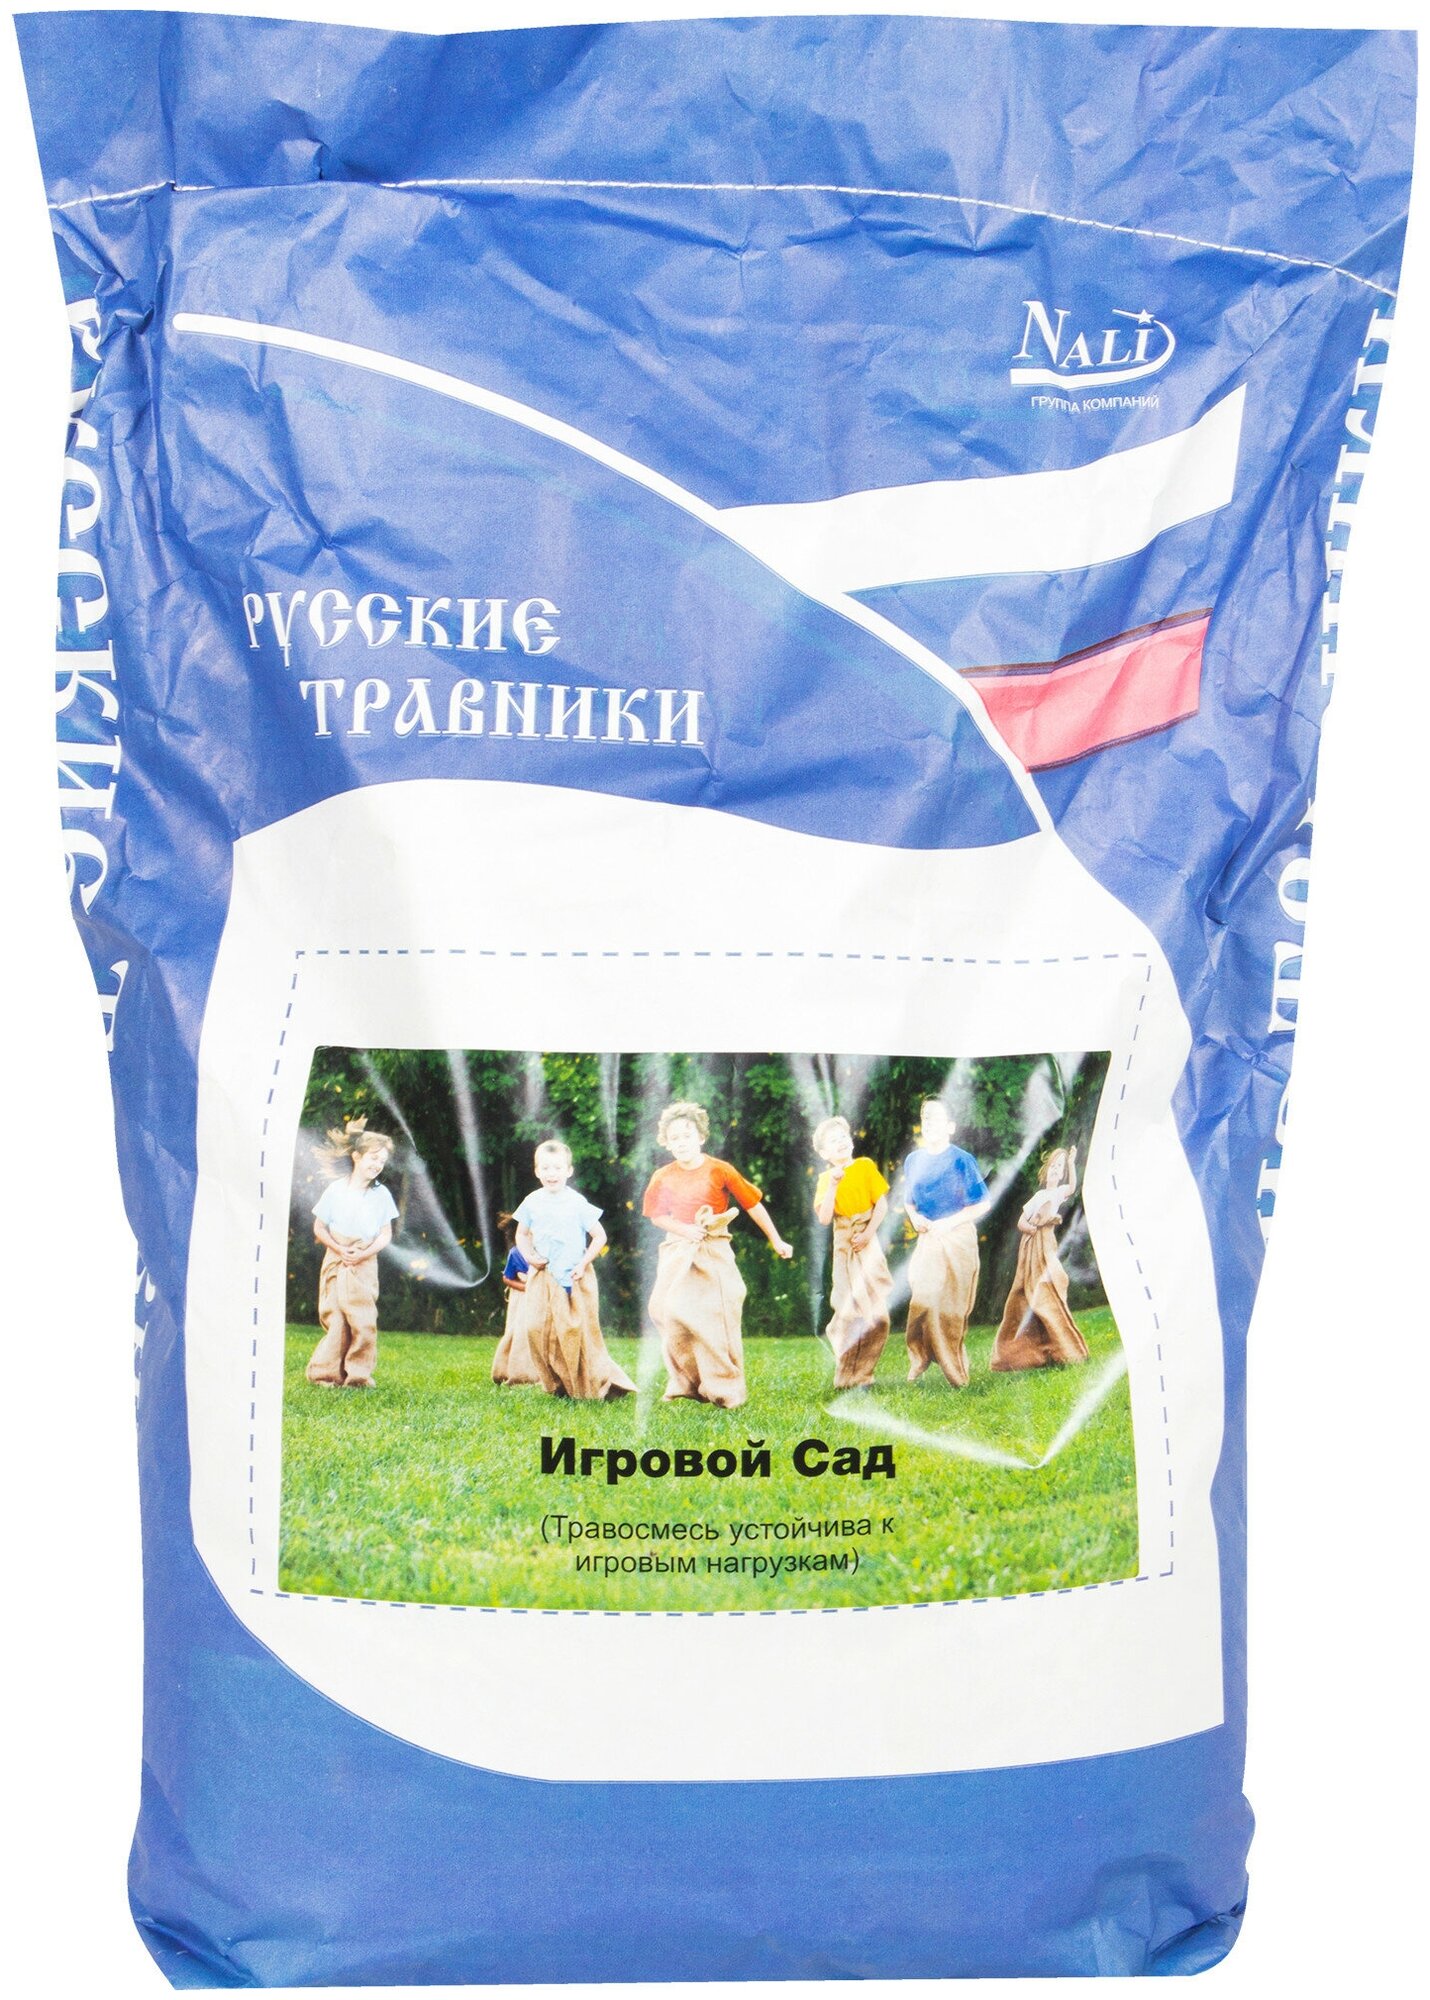 Семена газона Русские травники Игровой Сад 7.5 кг Леруа Мерлен - фото №1